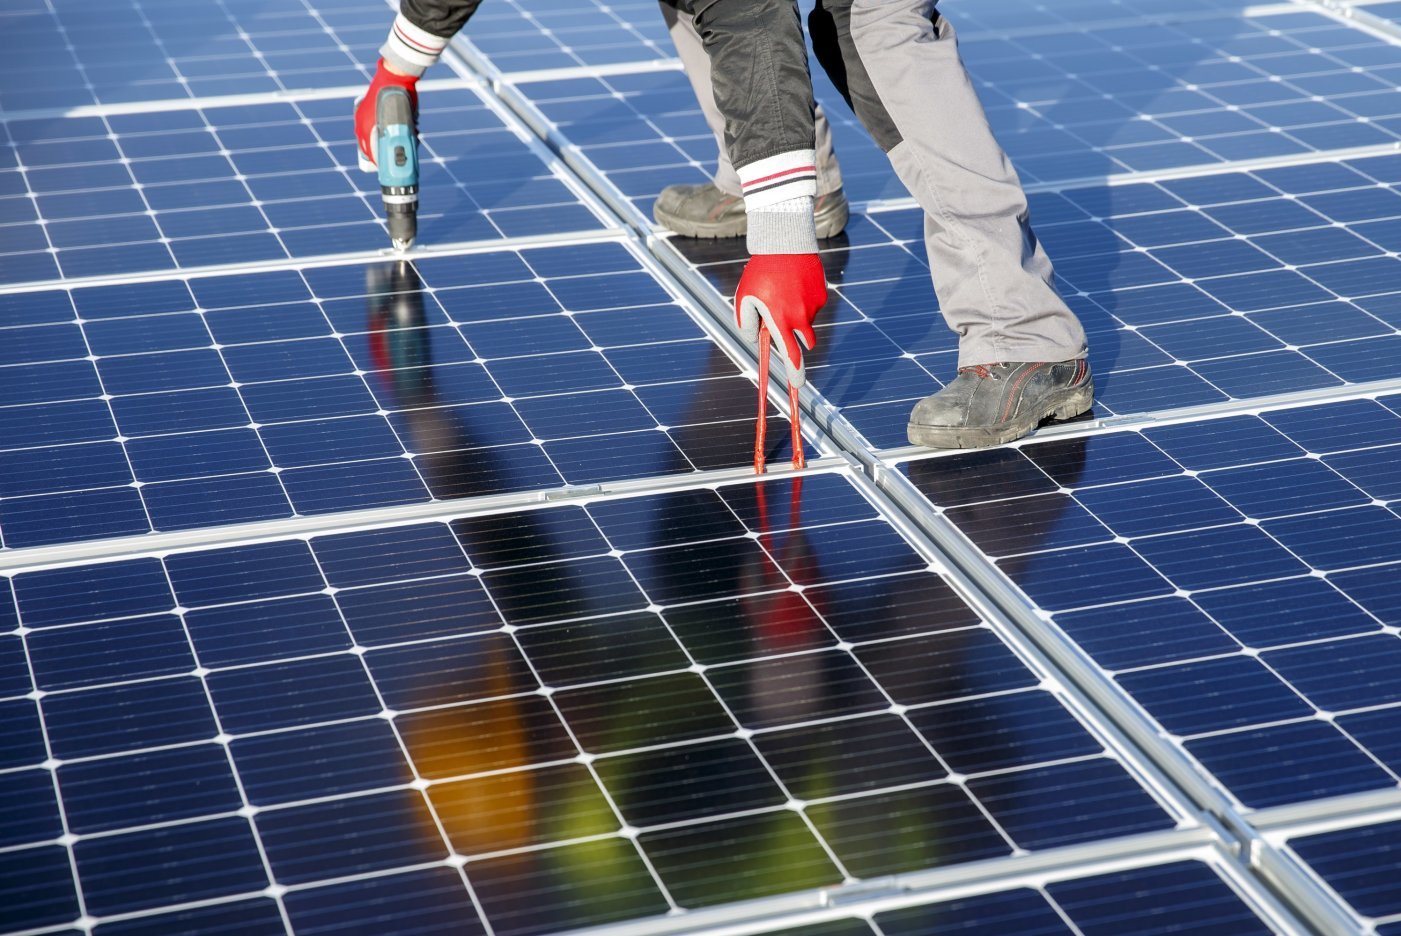 Des ouvriers posent des panneaux solaires sur le toit du stade de Geneve, ce mardi 12 novembre 2019 a Geneve. Une centrale solaire est en cours d'installation sur le toit du Stade de Geneve par les Services industriels de Geneve (SIG). Les quelque 5000 m2 de panneaux photovoltaiques permettront de produire 1,1 GWh d'electricite, soit l'equivalent de la consommation de 367 menages. (KEYSTONE/Salvatore Di Nolfi)